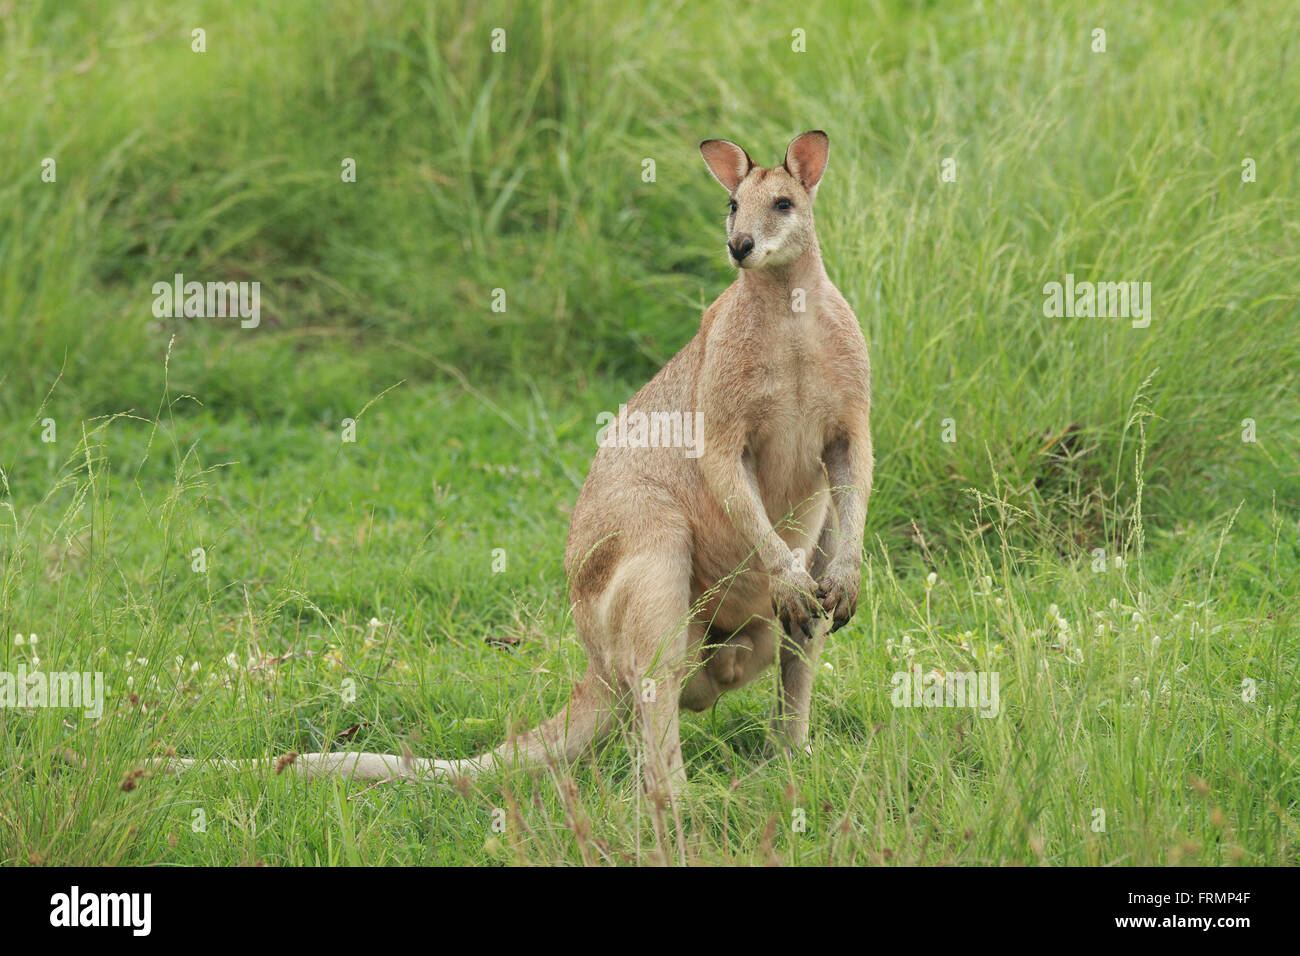 Eine männliche Agile Wallaby - Macropus Agilis - landen auch bekannt als ein Fluss Wallaby oder Sand Wallaby in grünen Rasen stehen in Australien Stockfoto